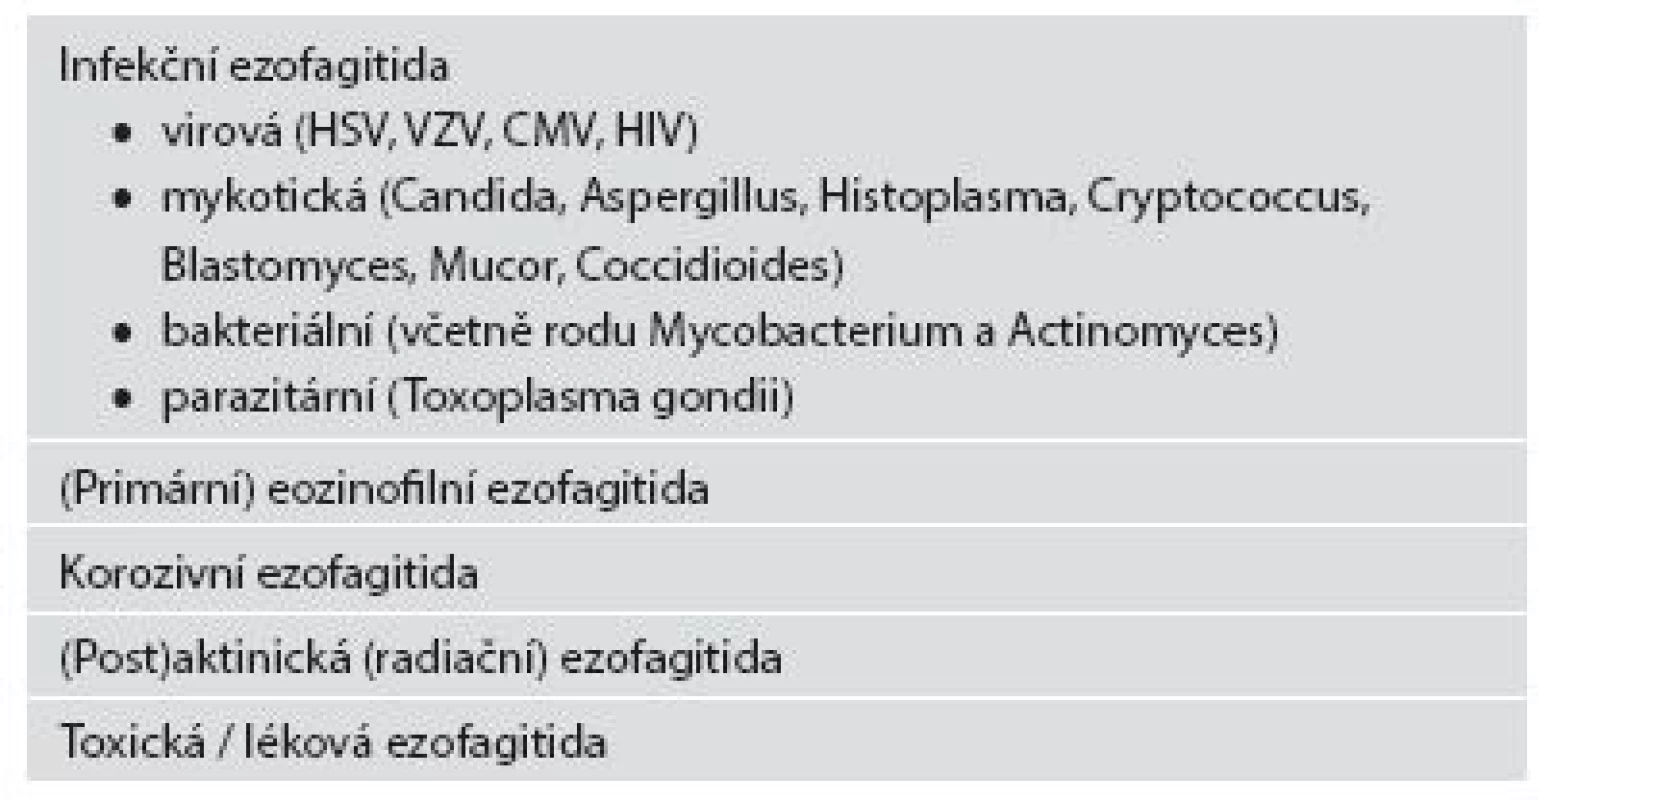 Základní typy ezofagitid (kromě refluxní ezofagitidy a systémových onemocnění).